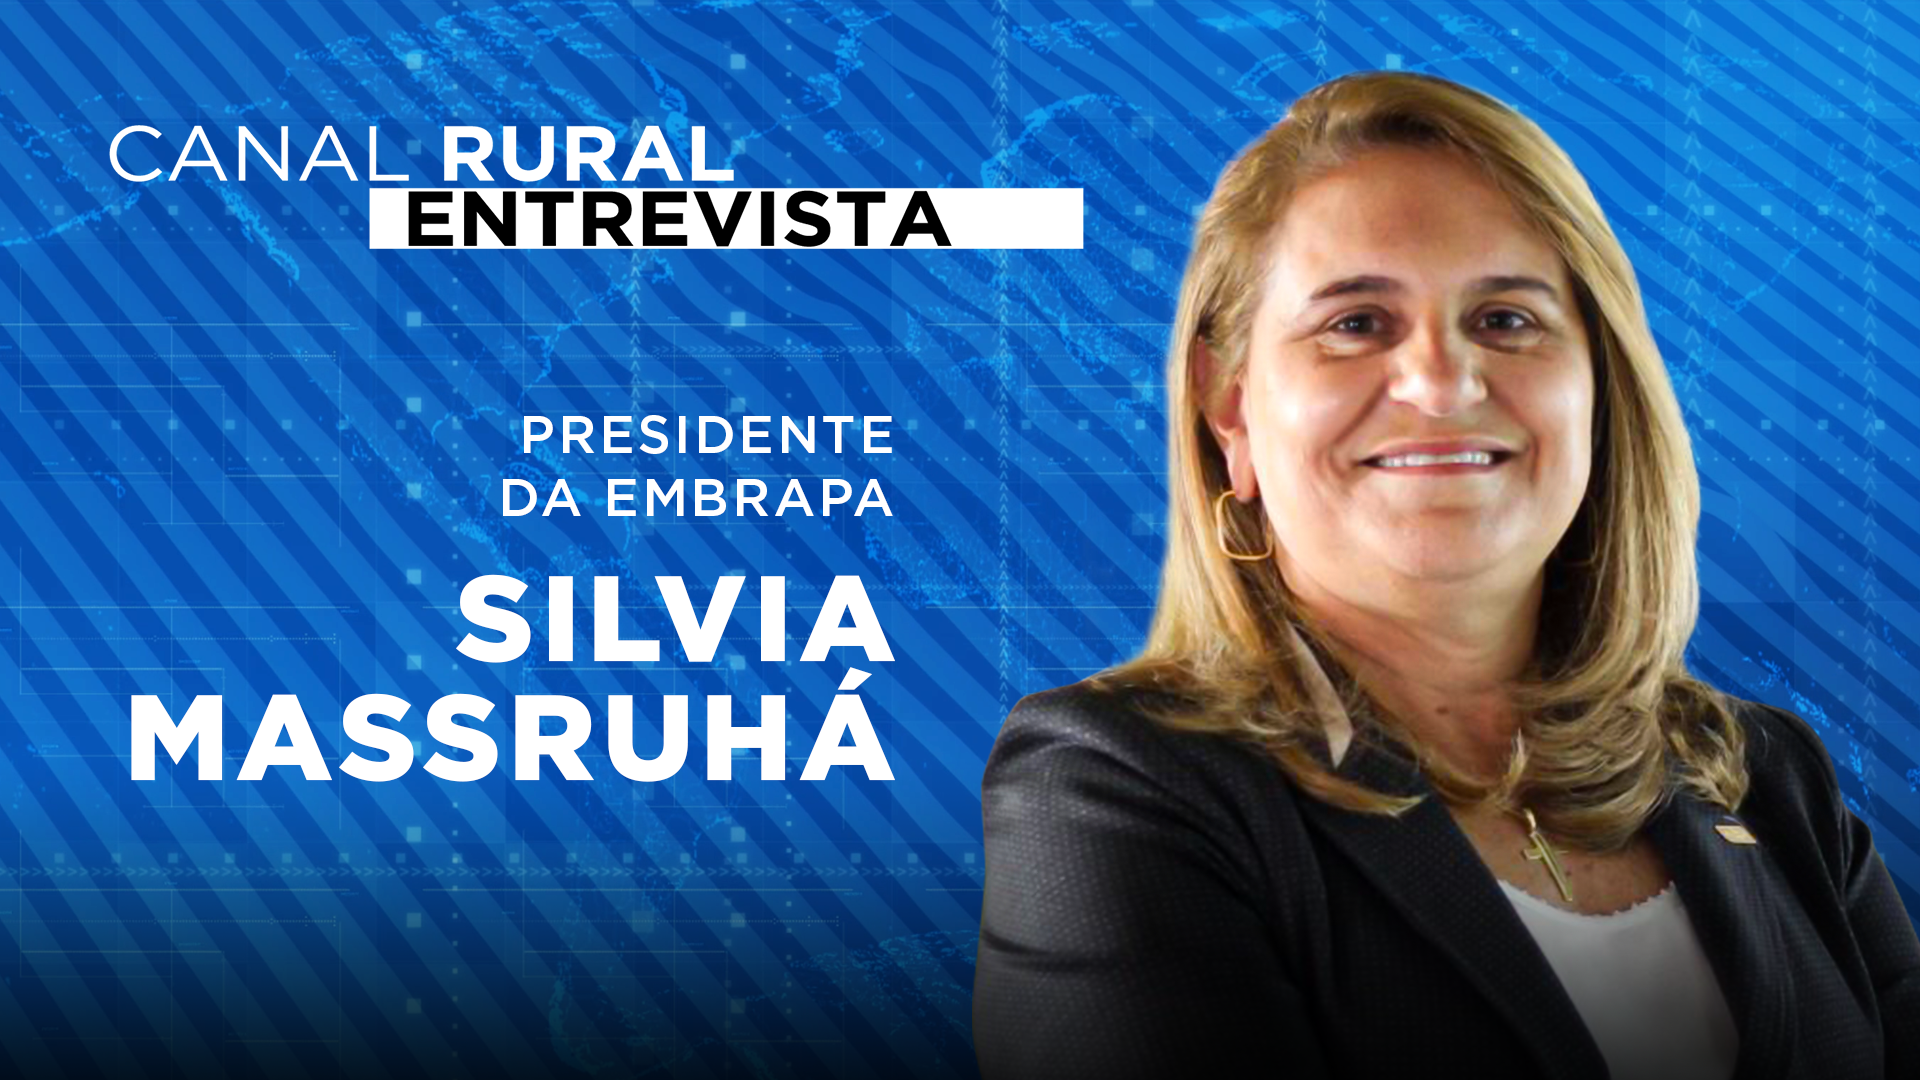 Canal Rural Entrevista recebe nova presidente da Embrapa, Silvia Massruhá